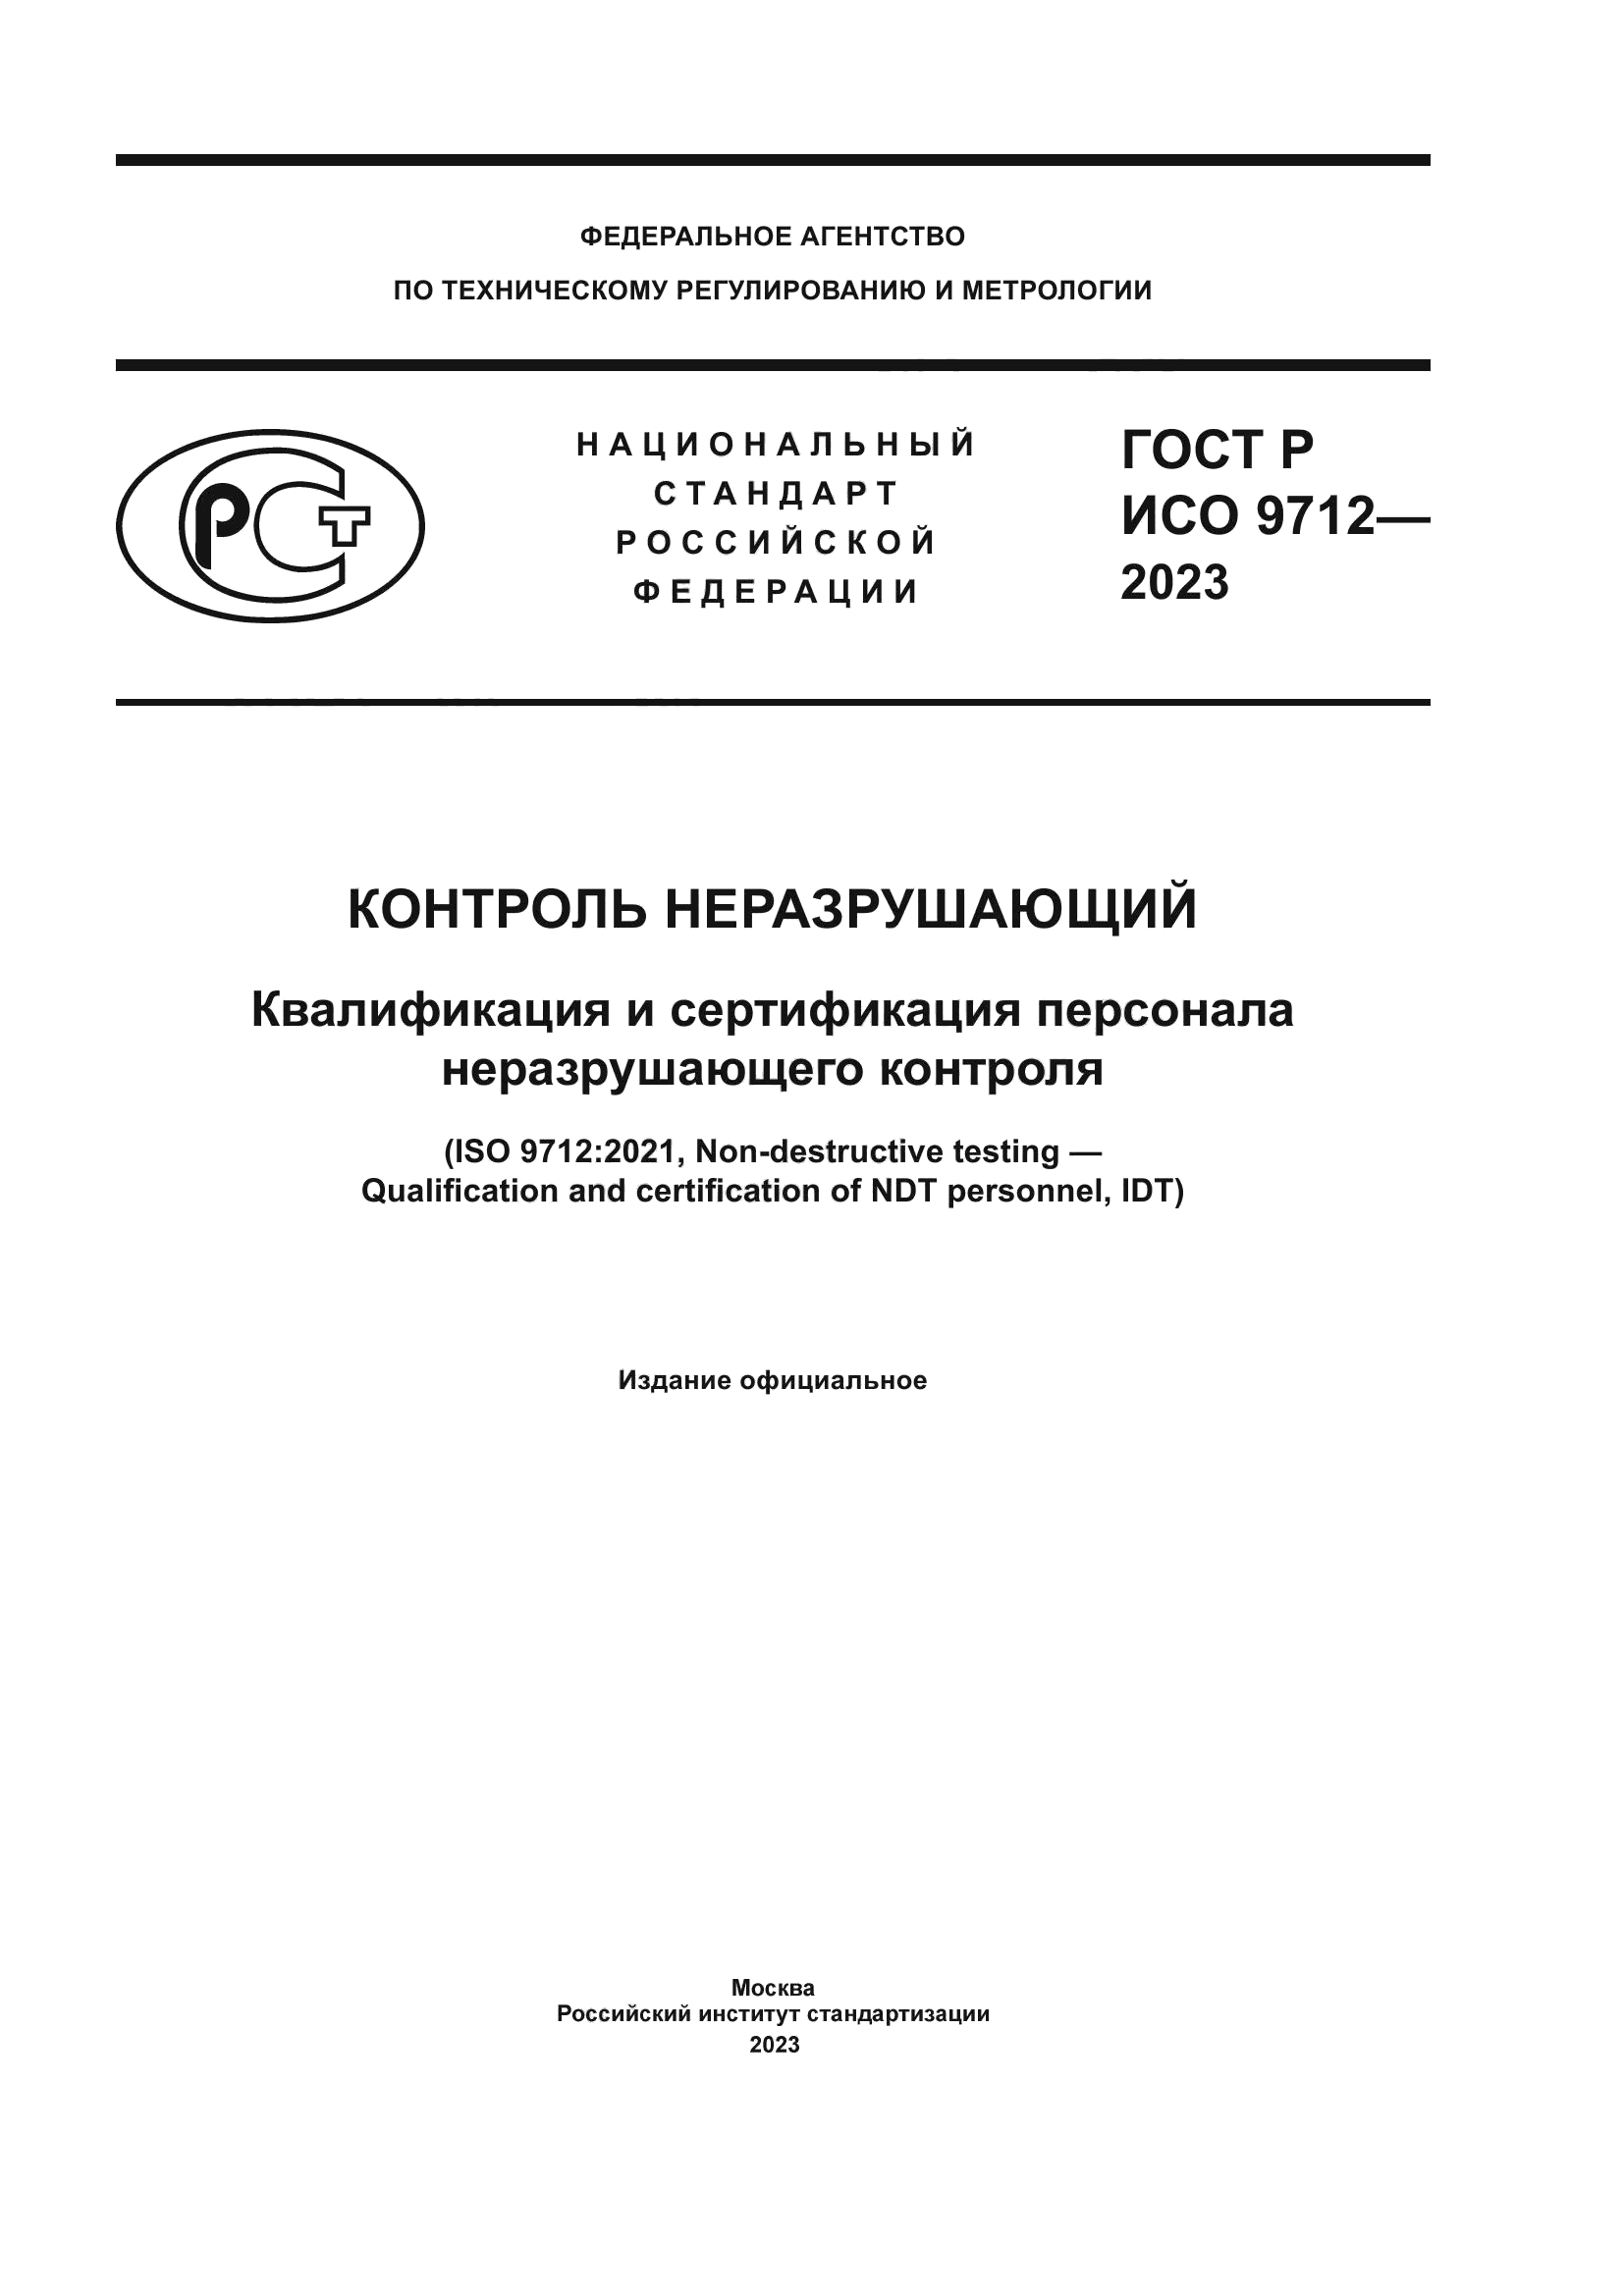 ГОСТ Р ИСО 9712-2023